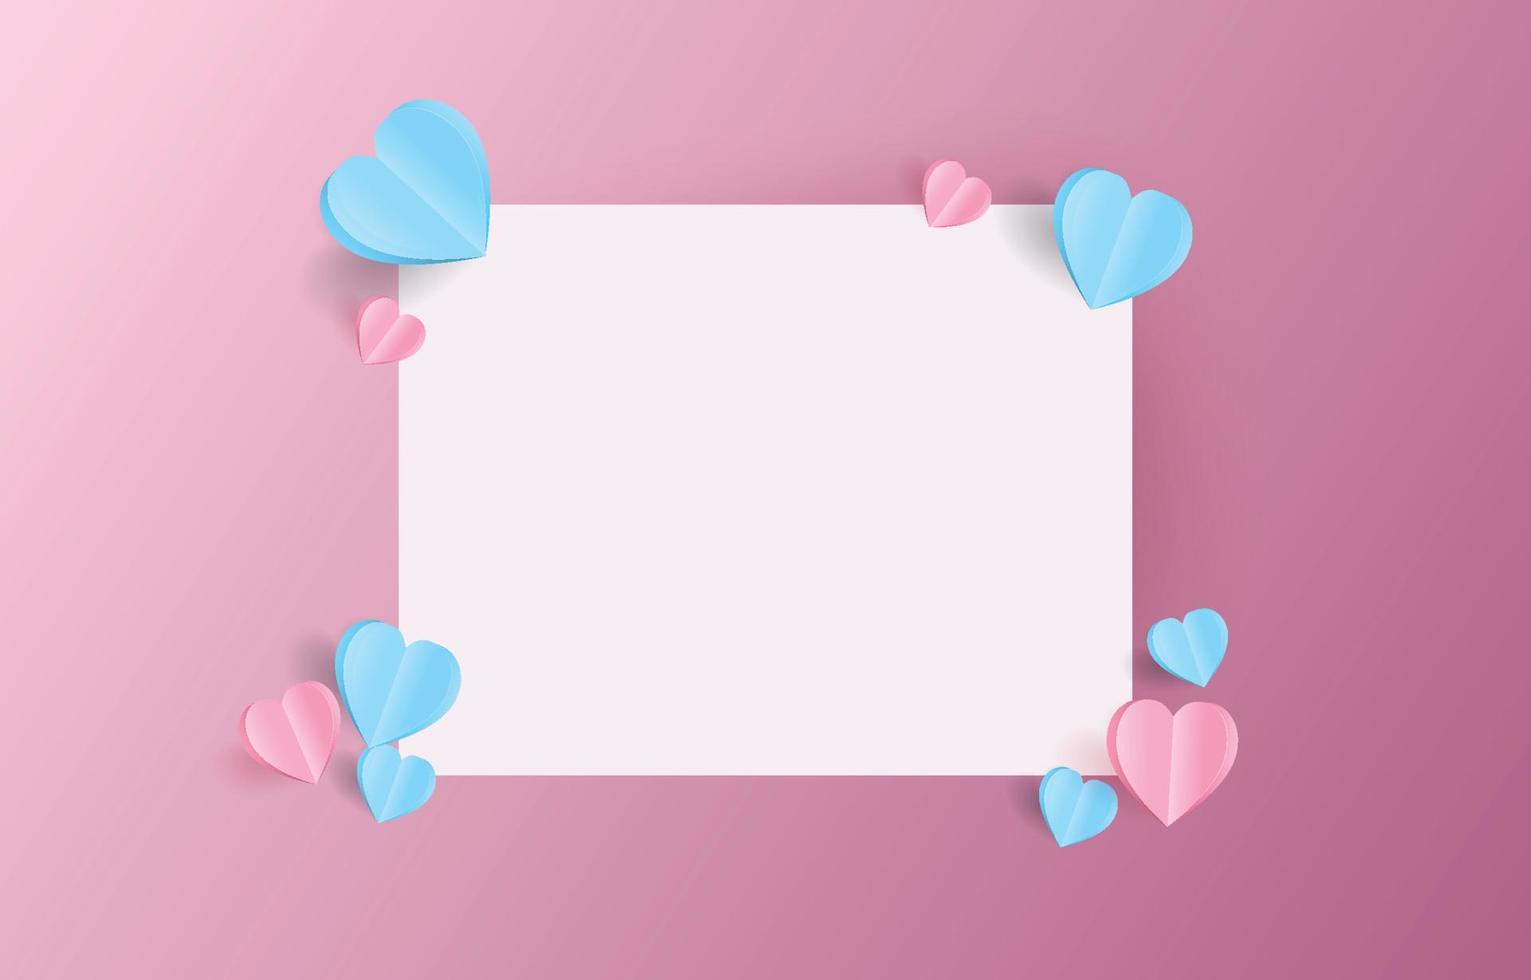 maquette de carte de lettre de la saint-valentin décorée de papier découpé en forme de coeur rose et bleu, illustration pour la saint-valentin ou le jour de l'amour, enveloppe vectorielle. vecteur